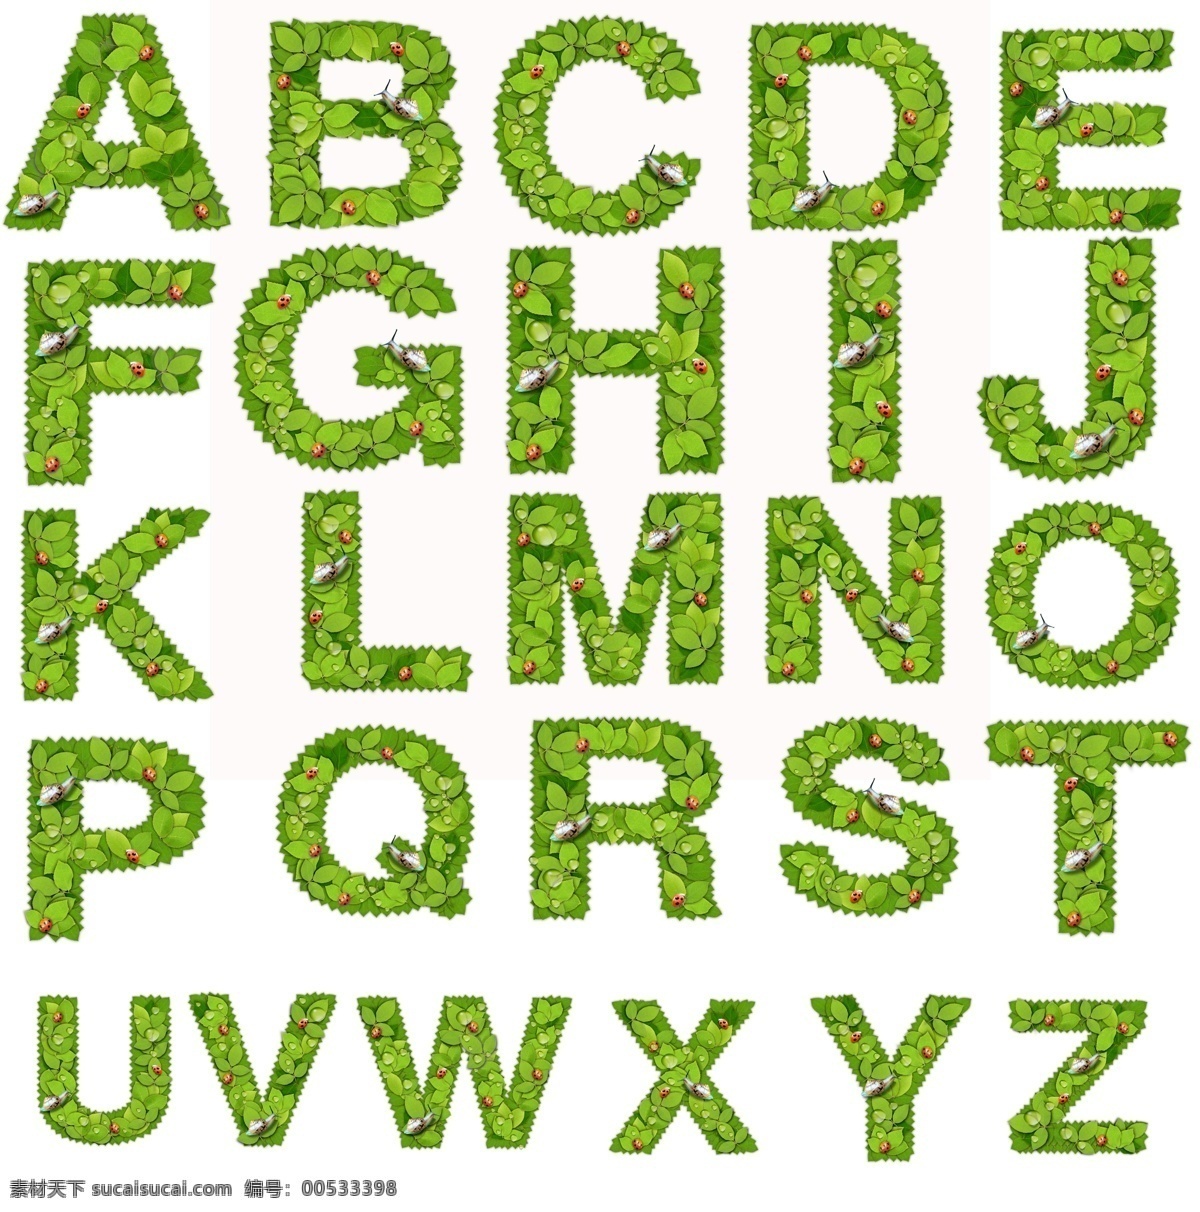 分层 符号 流行元素 时尚元素 树叶 蜗牛 英文 源文件 时尚 字母 流行 元素 模板下载 字母数字 数字 矢量图 艺术字